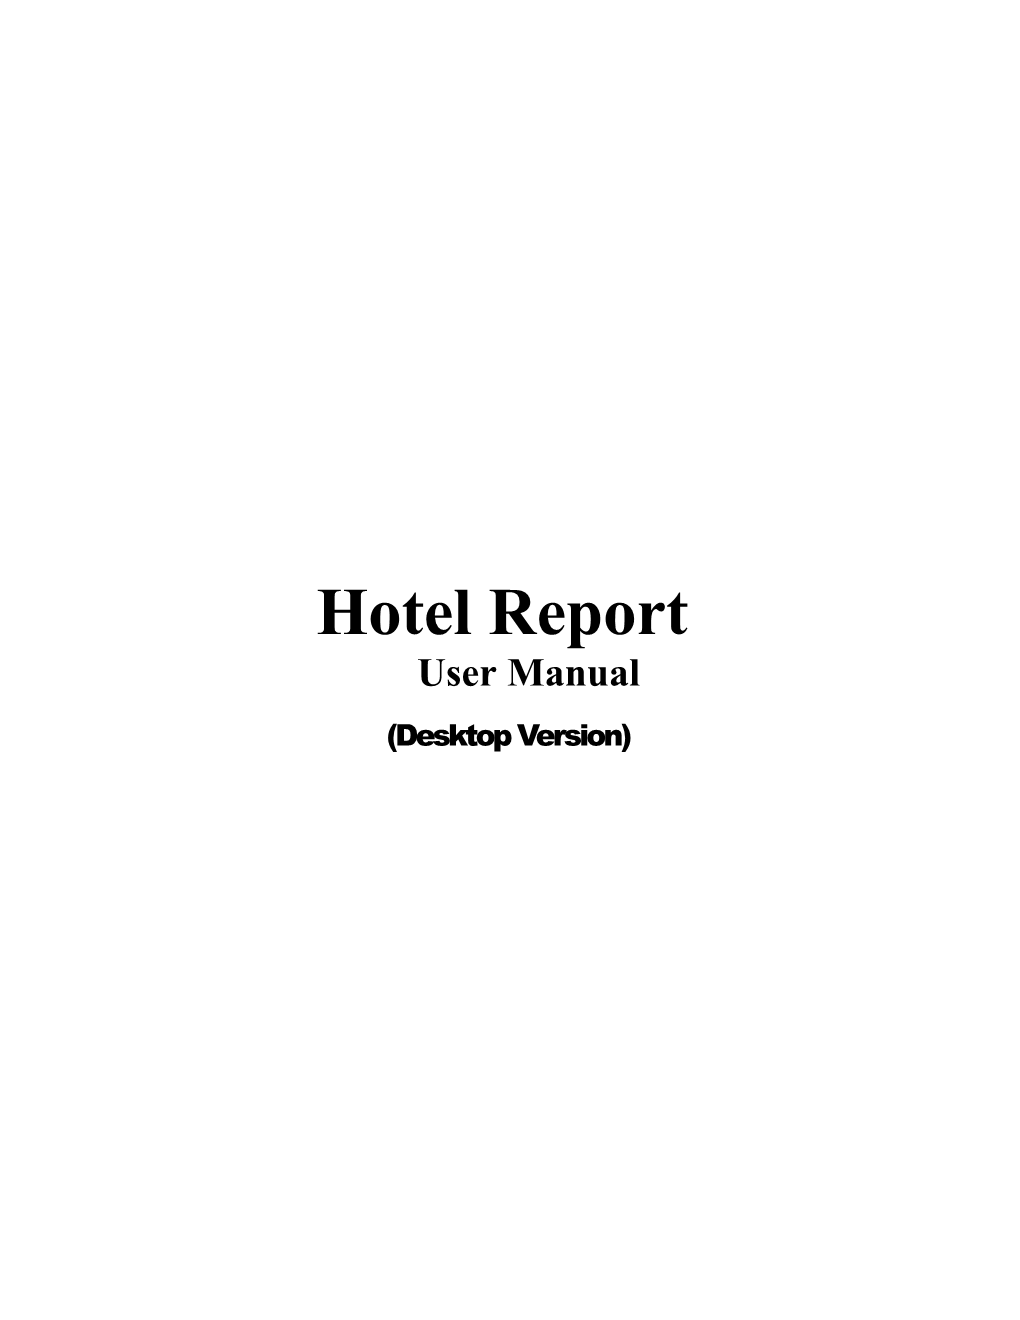 Hotel Report User Manual